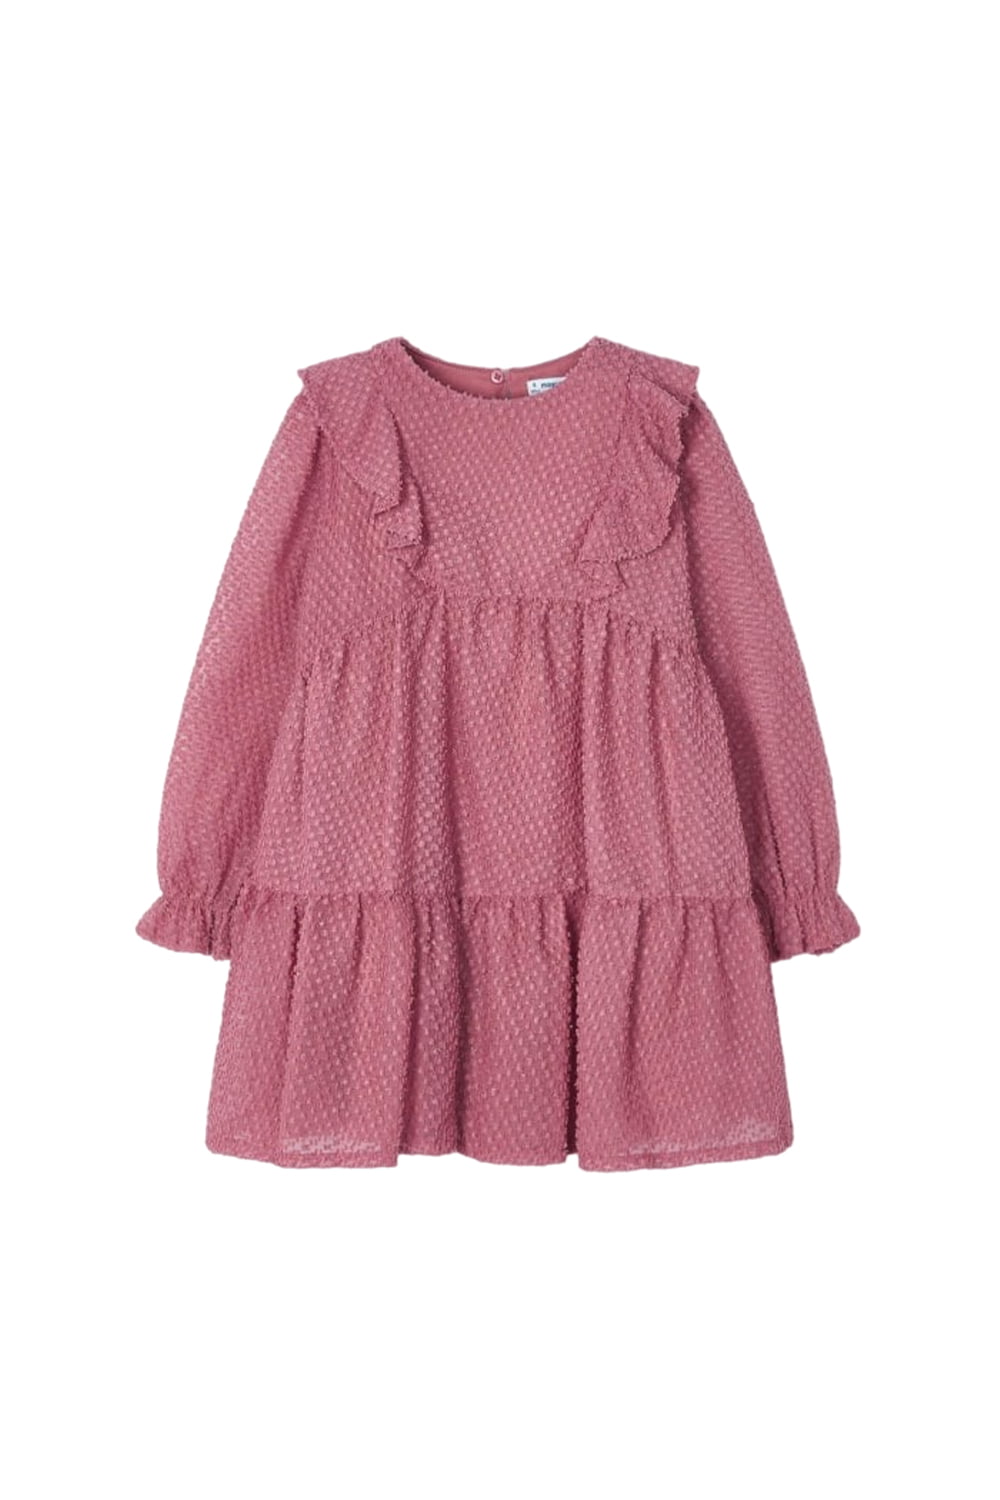 Παιδικό Φόρεμα Για Κορίτσι MAYORAL 13-04927-010 Φούξια